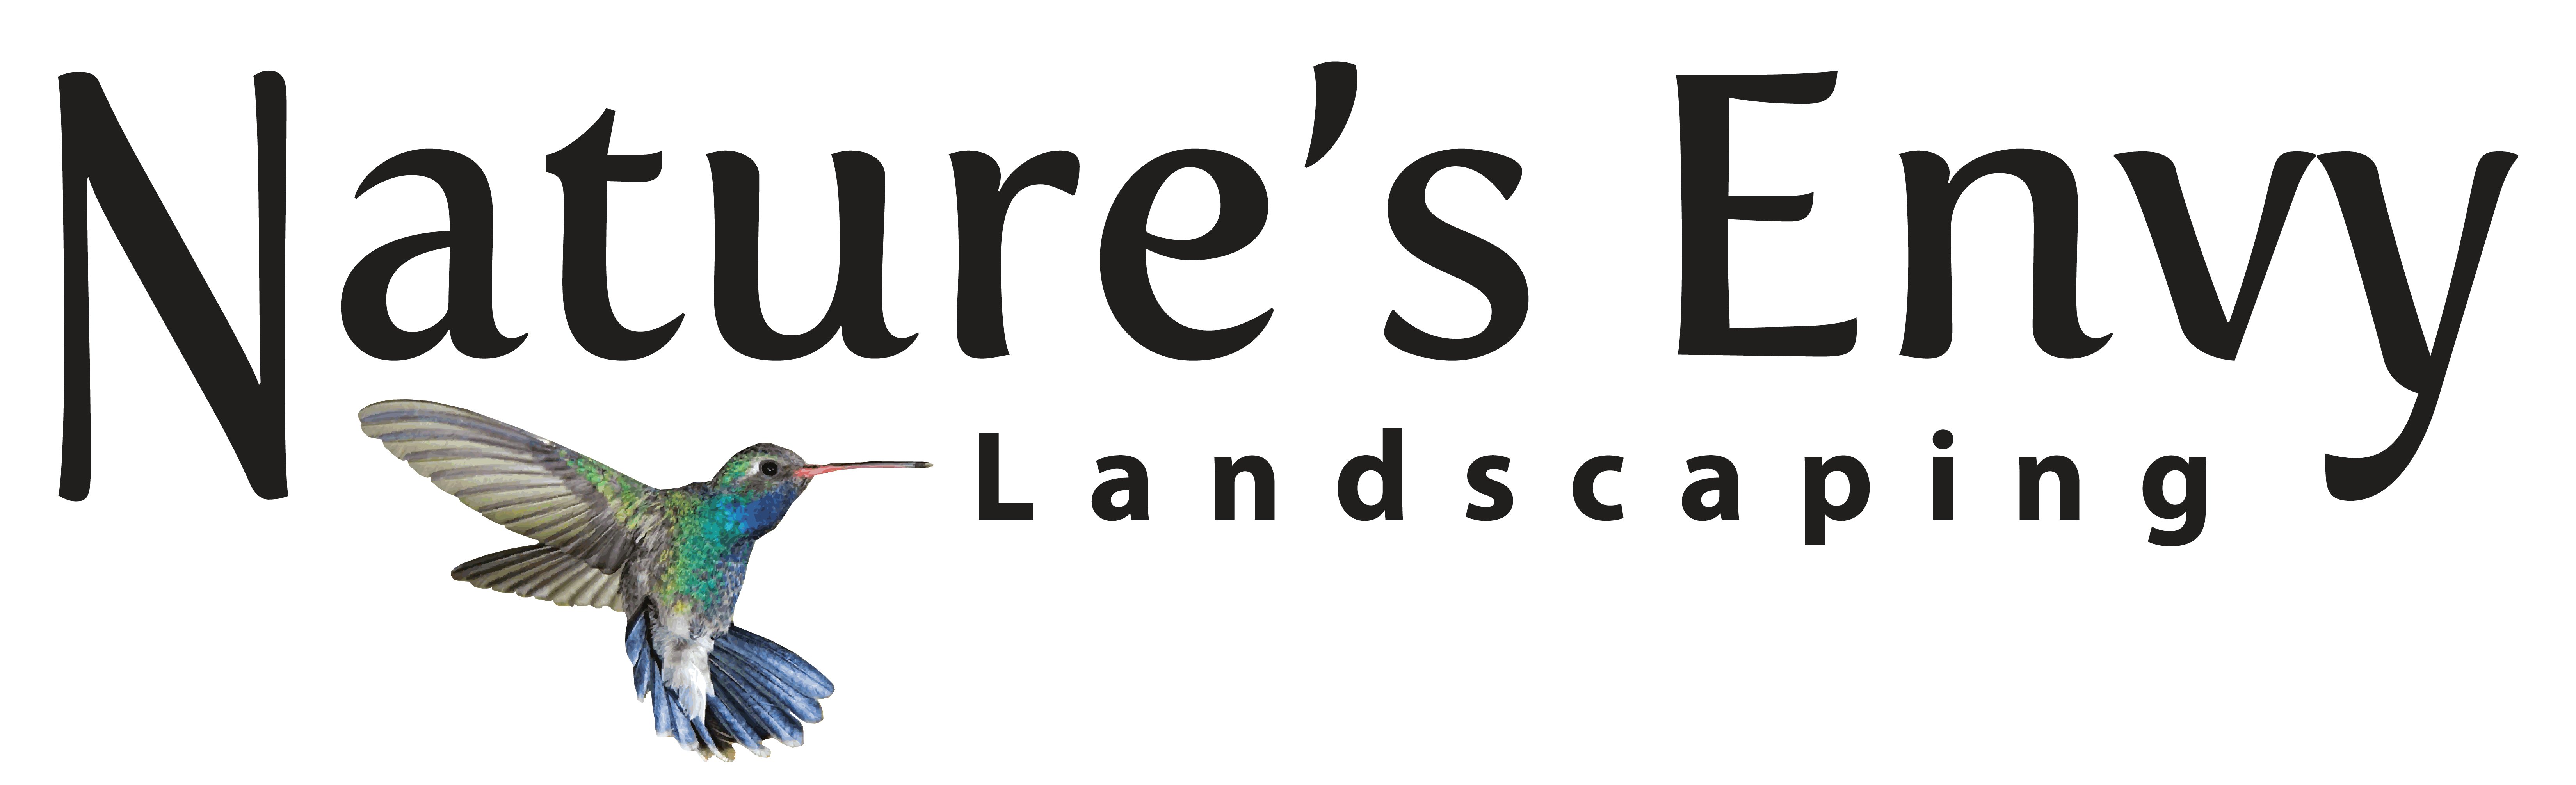 Nature's Envy Landscaping Logo